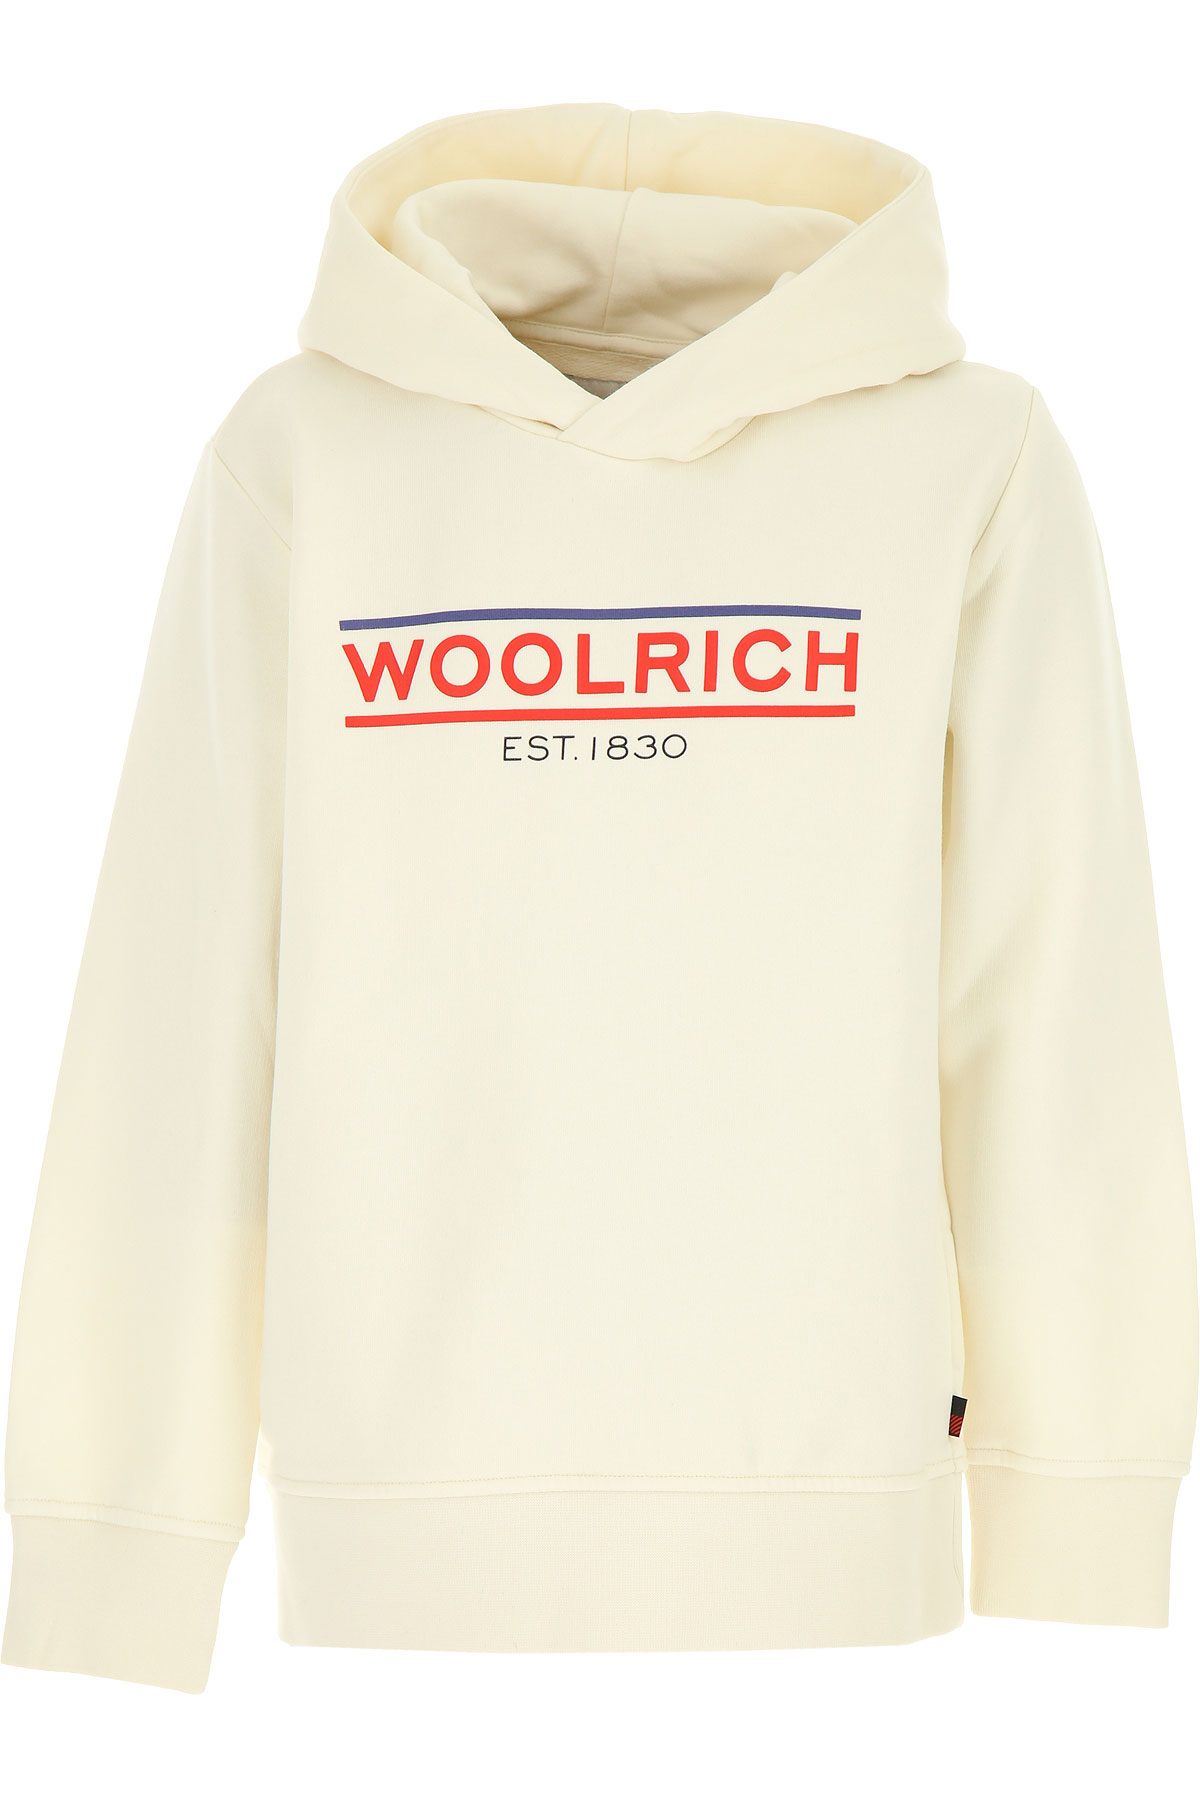 Woolrich Kinder Sweatshirt & Kapuzenpullover für Jungen Günstig im Sale, Weiss, Baumwolle, 2017, 10Y 12Y 14Y 16Y 8Y